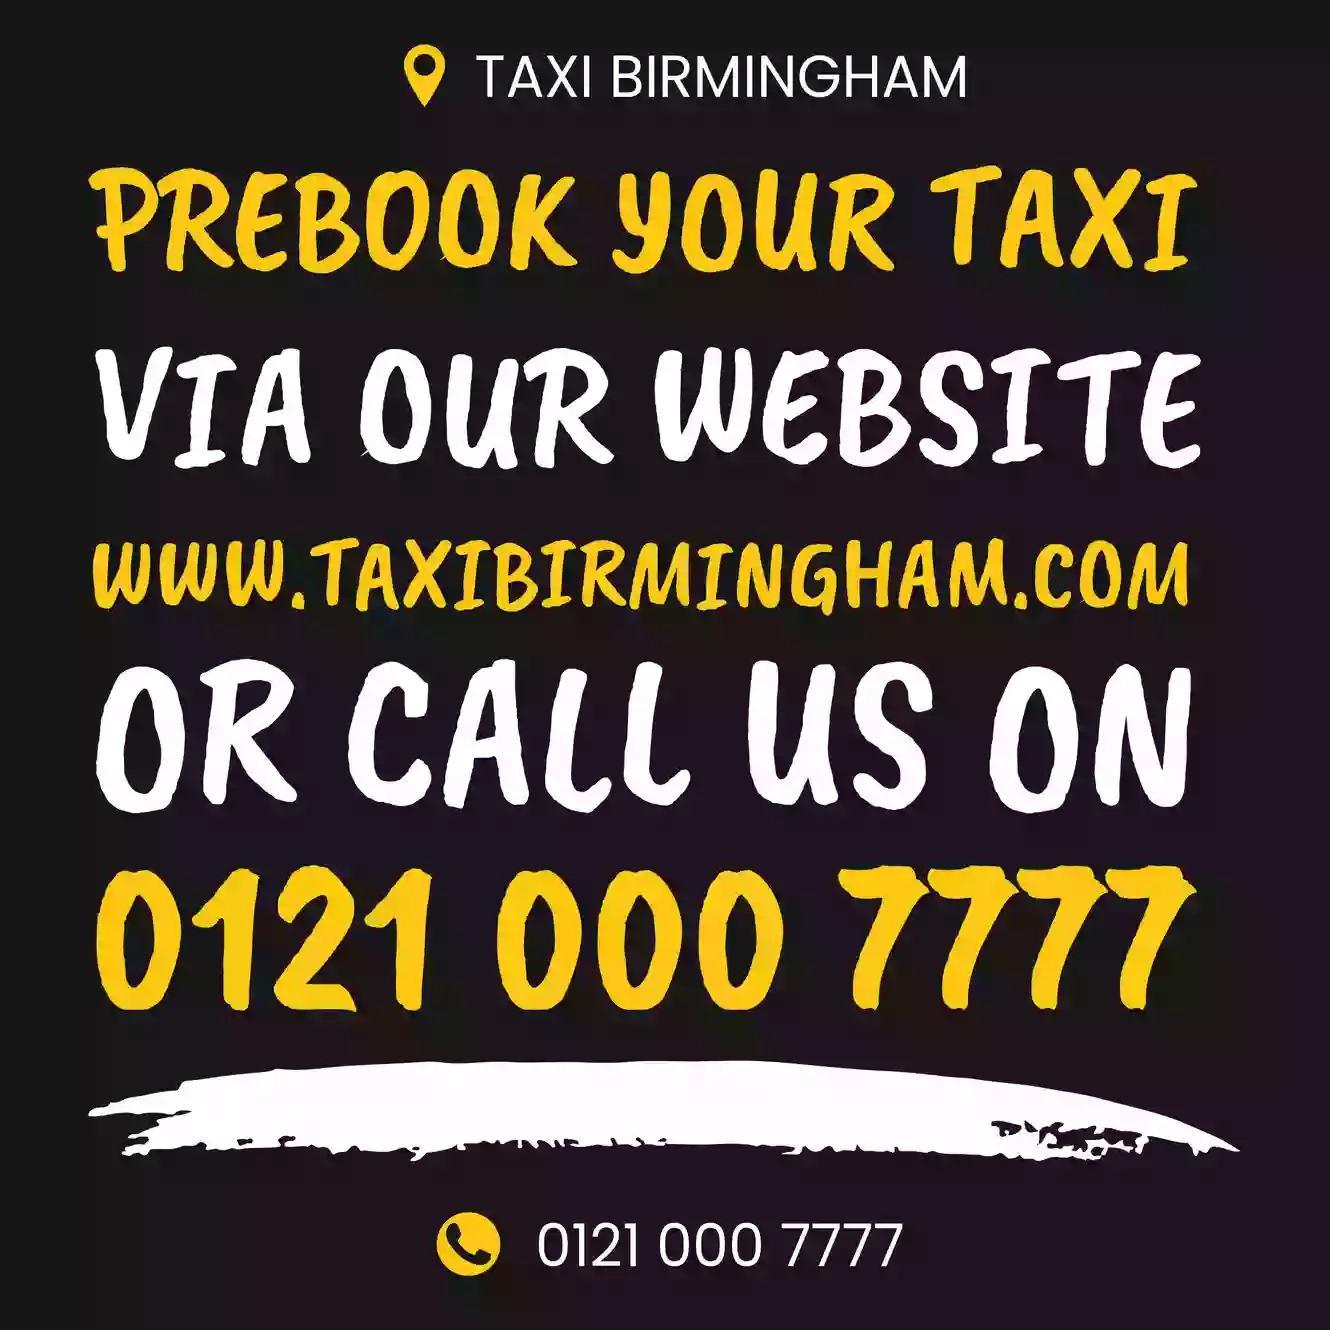 Taxi Birmingham Ltd